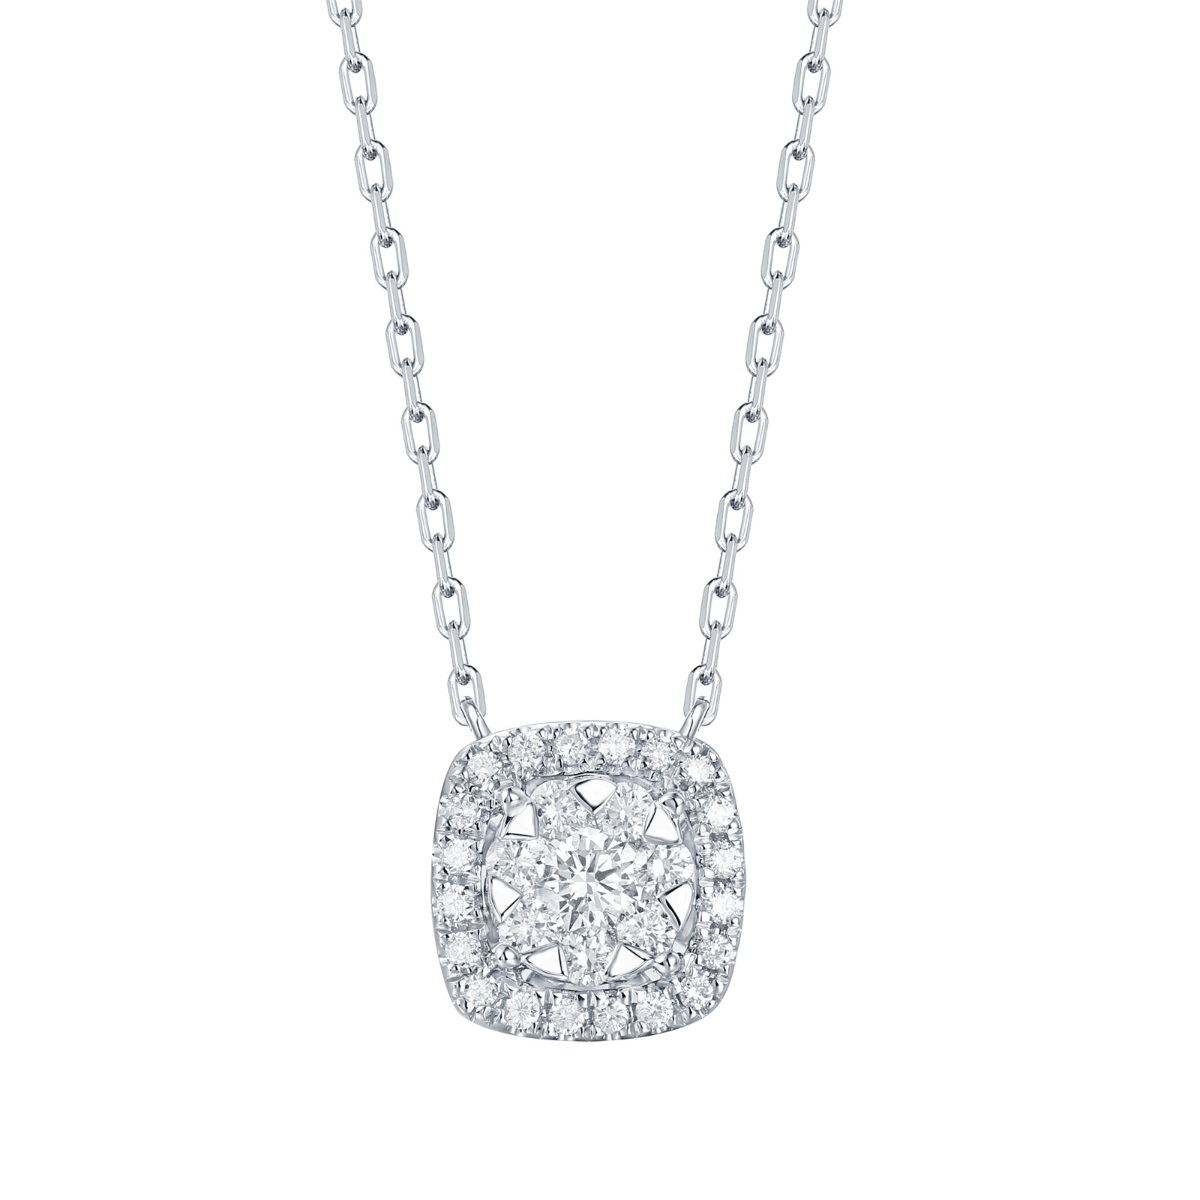 NL36373WHT – 18K White Gold Diamond Necklace, 0.45 TCW